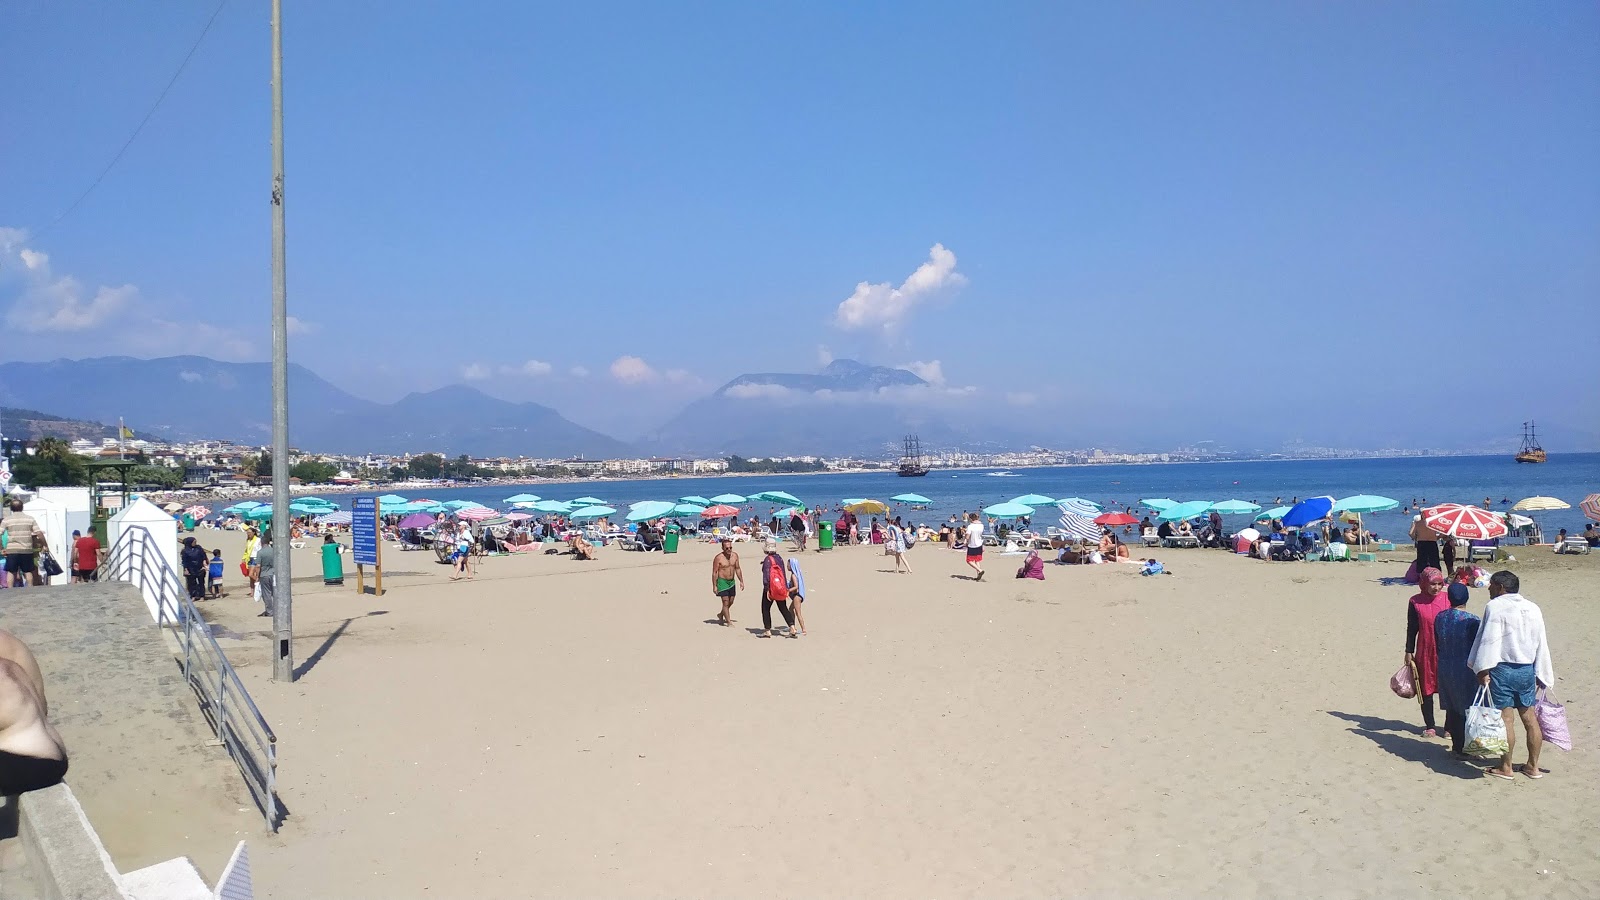 Zdjęcie Galip Dere beach z przestronna plaża